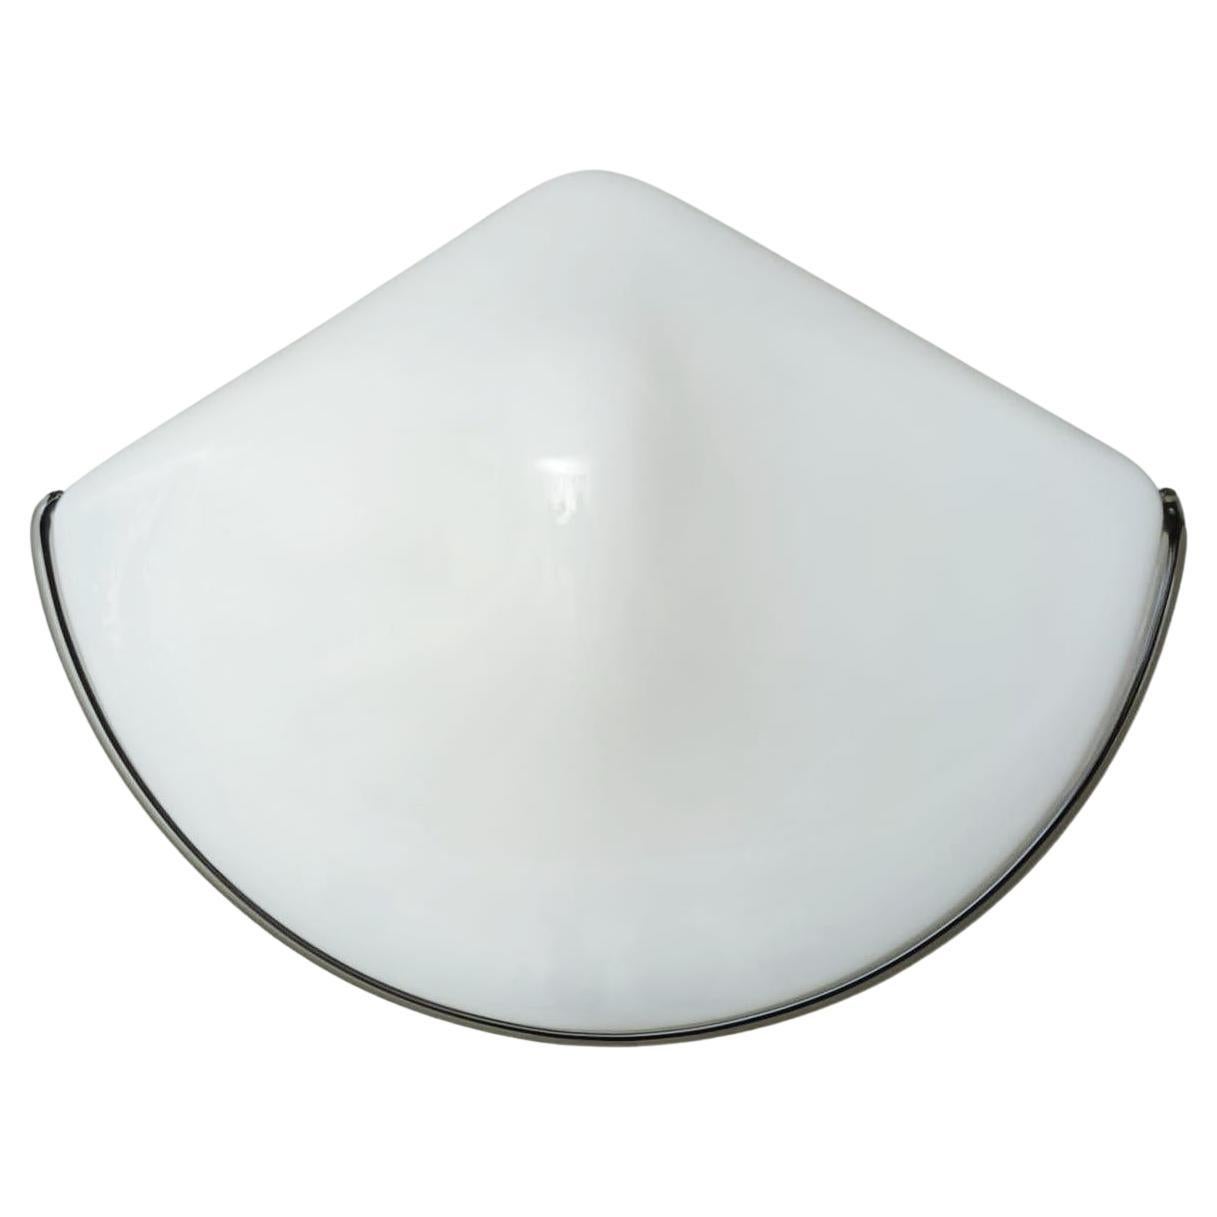 Dreieckige Murano-Wandleuchter in Milchweiß, 3 Stück verfügbar im Angebot